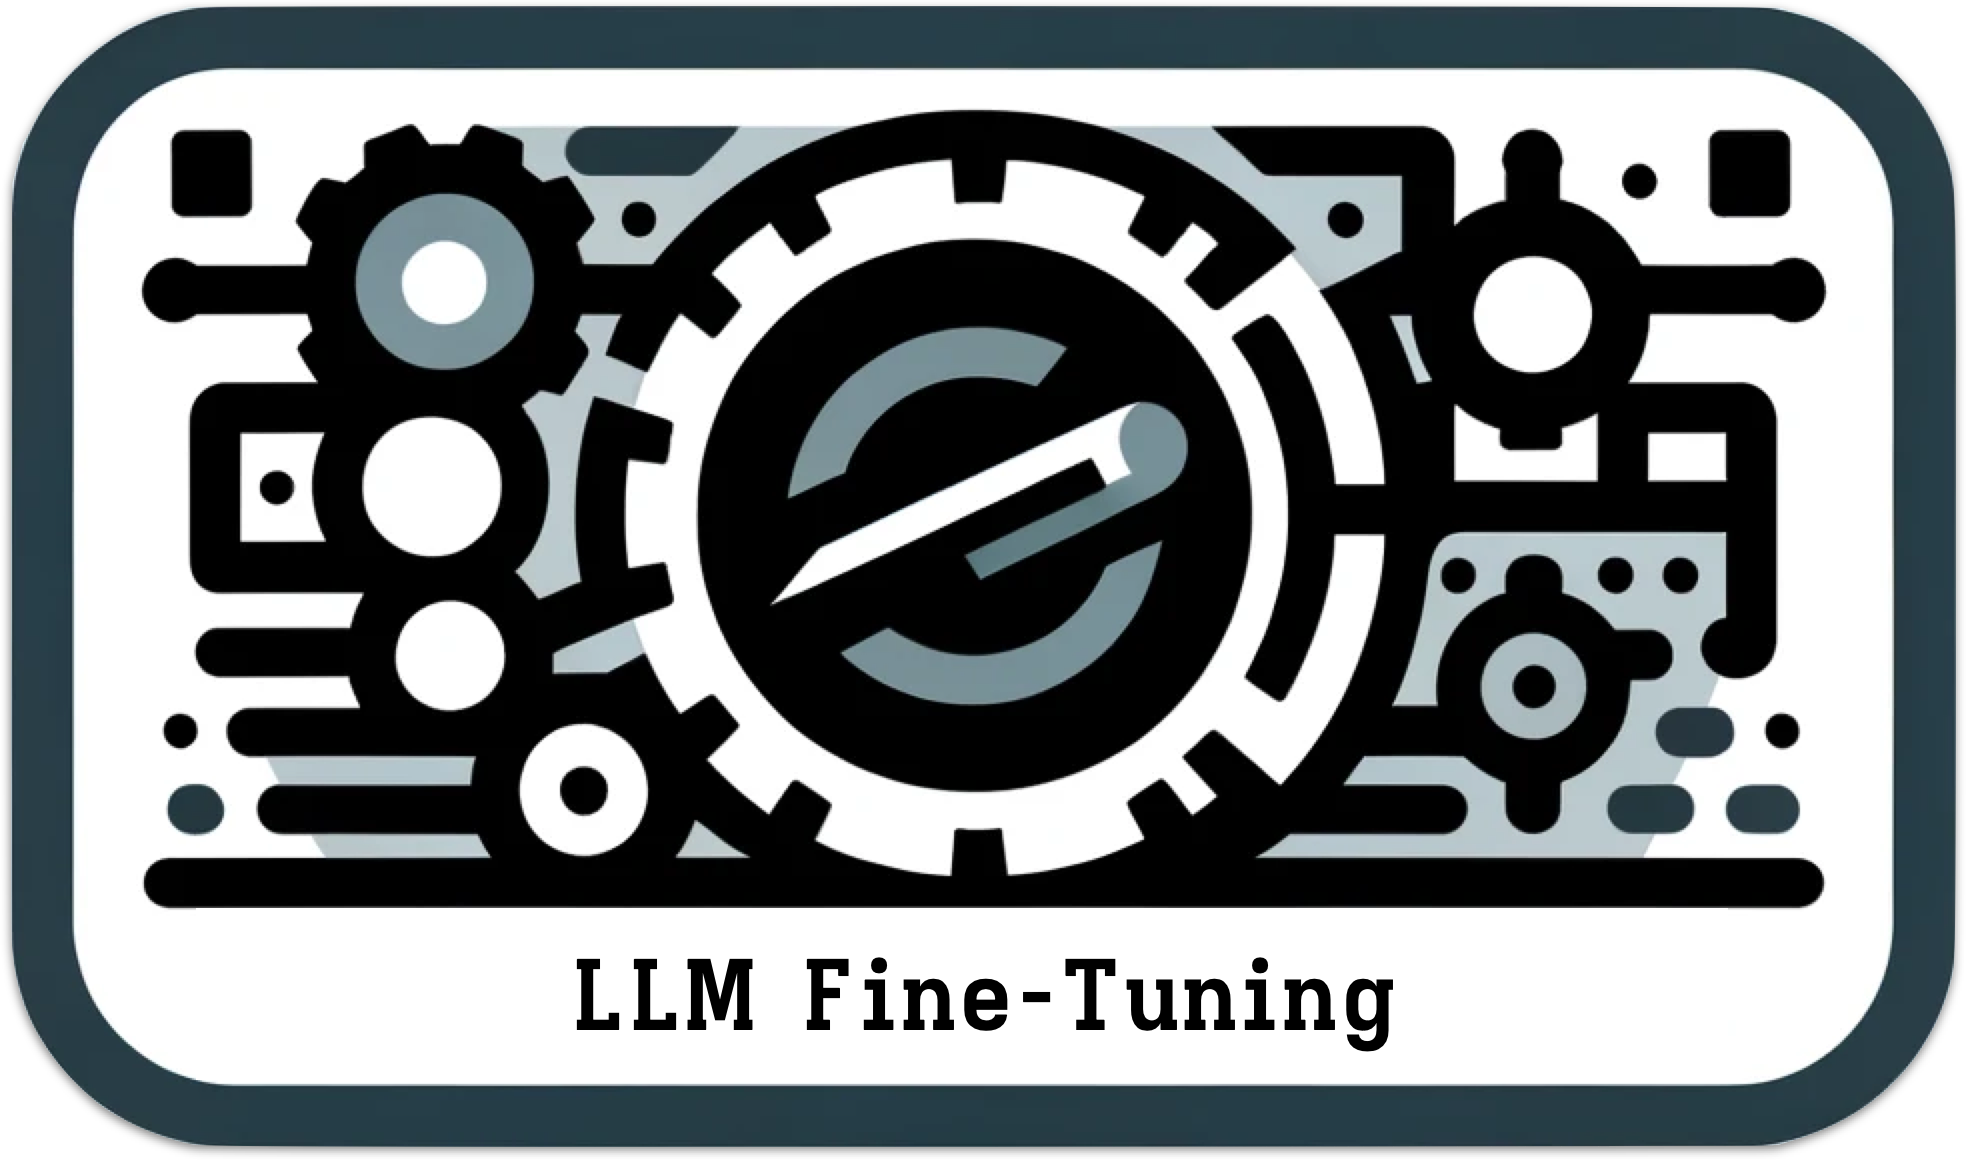 LLM Fine-Tuning - Home